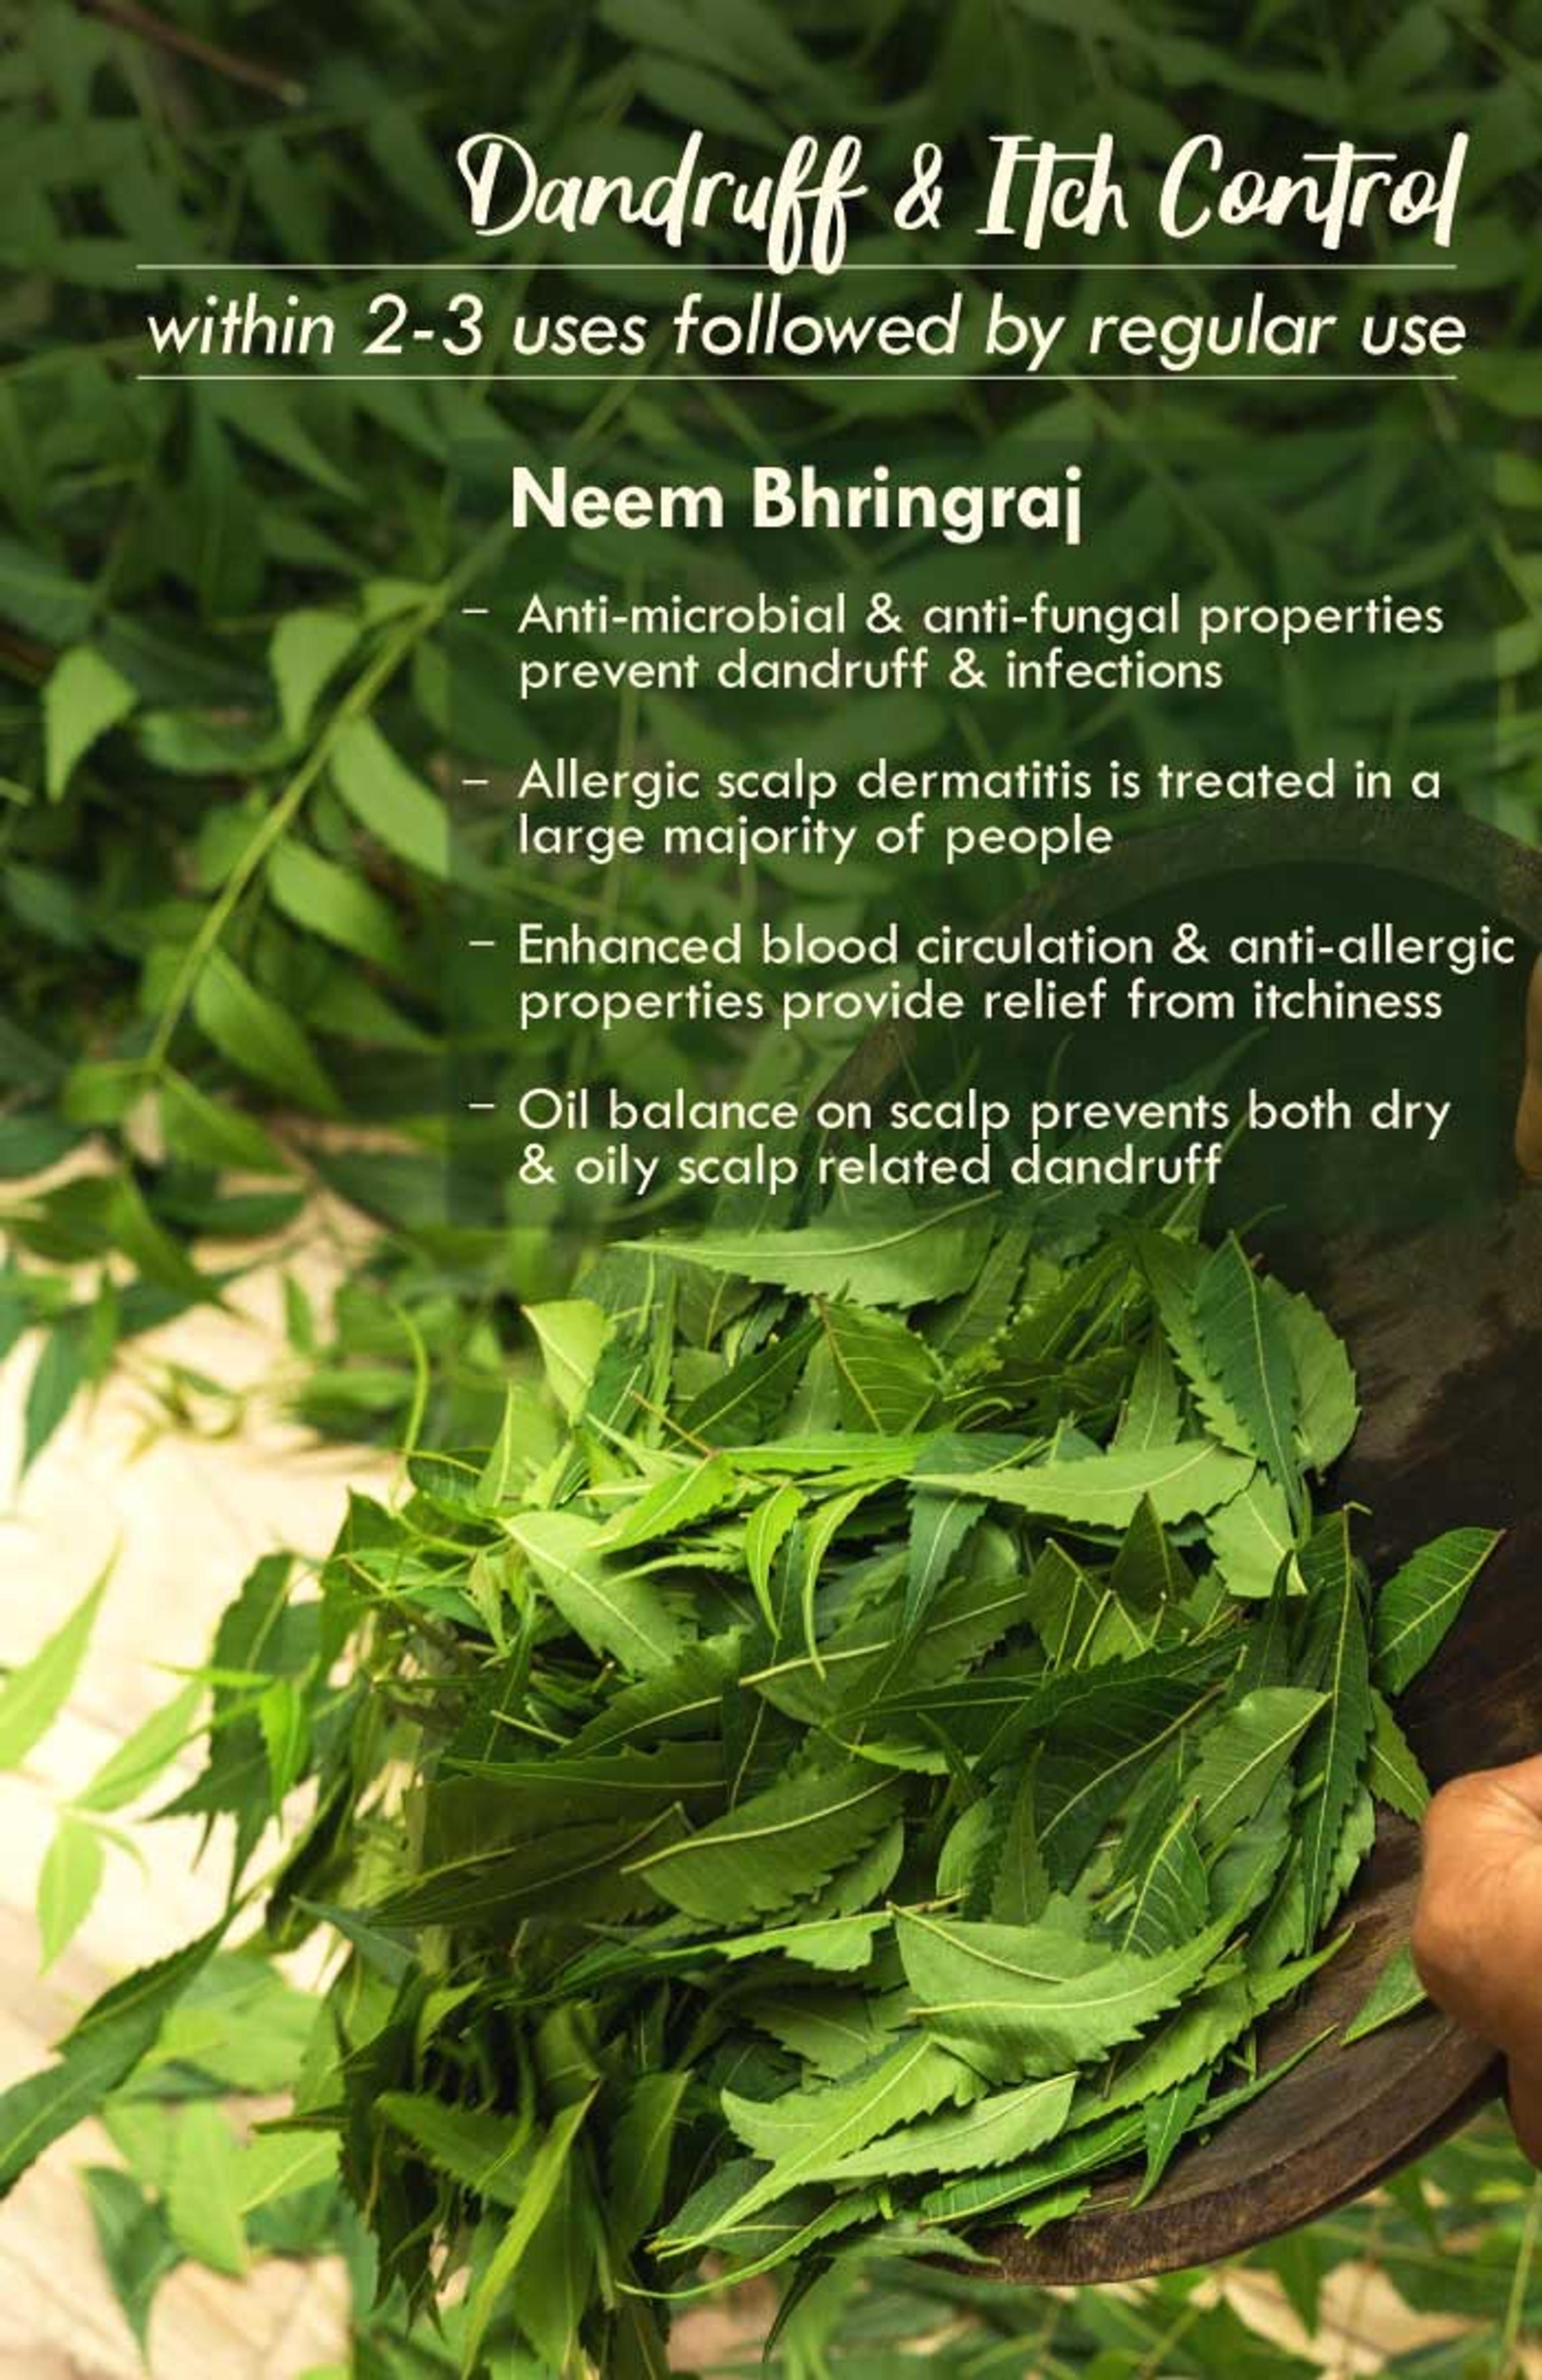 neem-bhringraj-Summer-hair-oil-4